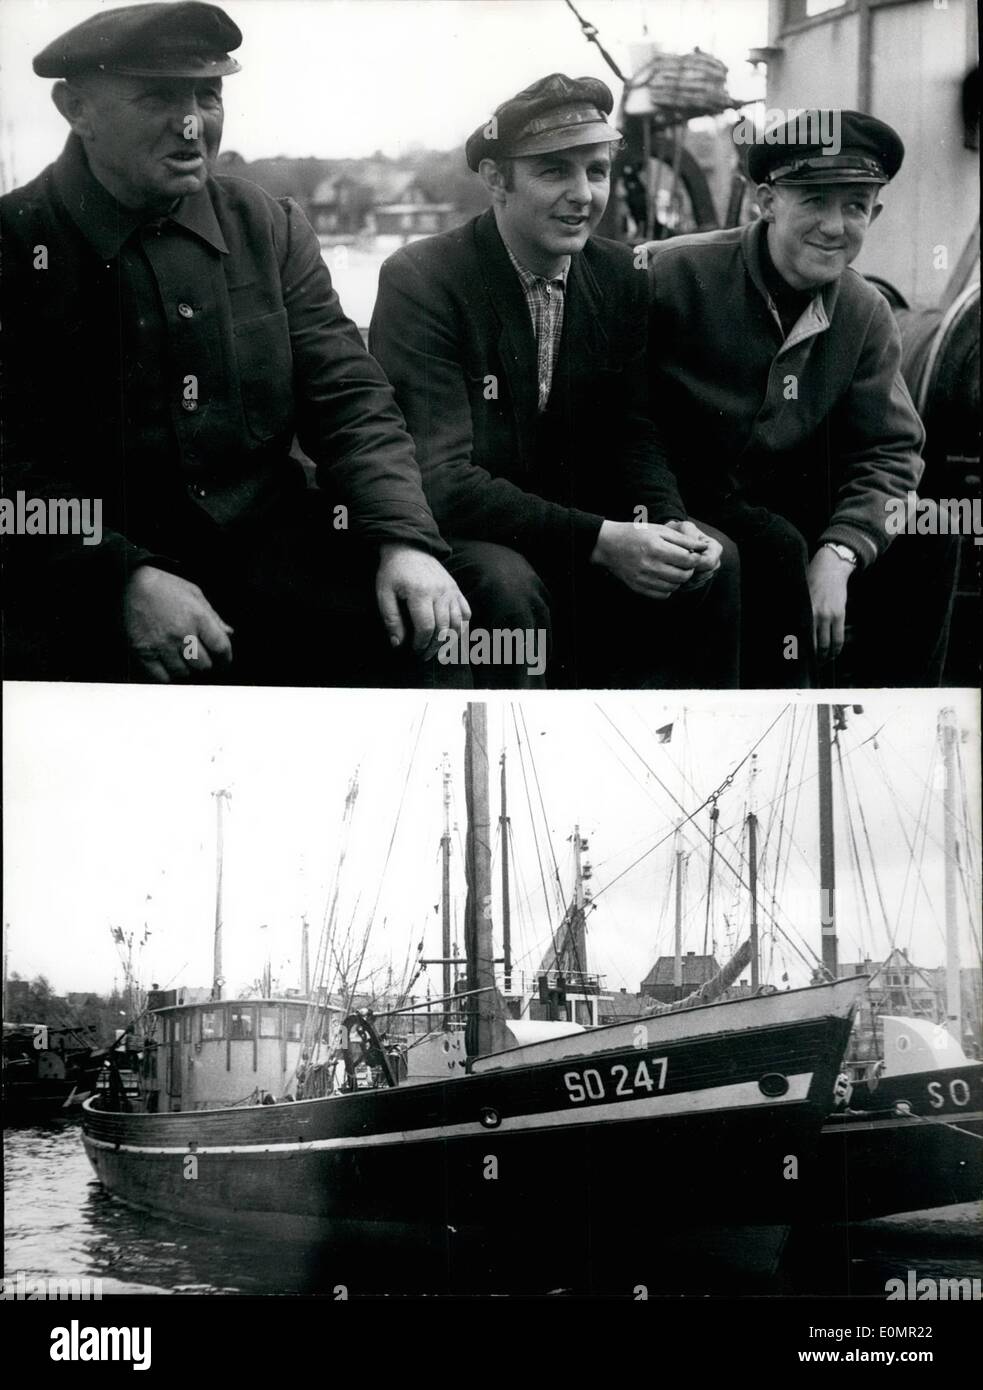 Mai 05, 1956 - Deutsche Amba y bezahlt 1000 Rubel für Deutsche Fischer. Zwei fisherboats aus Kiel/Deutschland wurden von den Sowjets aus Memel an der Küste von Ostpreussen erfasst. Die Boote hatten die 12-Meilen-zone, wenn Sie die Lachse wurden eingegeben. Die Messer wurden in den Hafen von Memel gebracht. Die Sowjets waren recht freundlich und korrekt, aber sie sagten die Fischer würden Sie zu 1000 Rubel bezahlen. War ein Kabel an der Deutschen Botschaft in Moskau antwortete, dass die Botschaft für Sie bezahlen Stockfoto